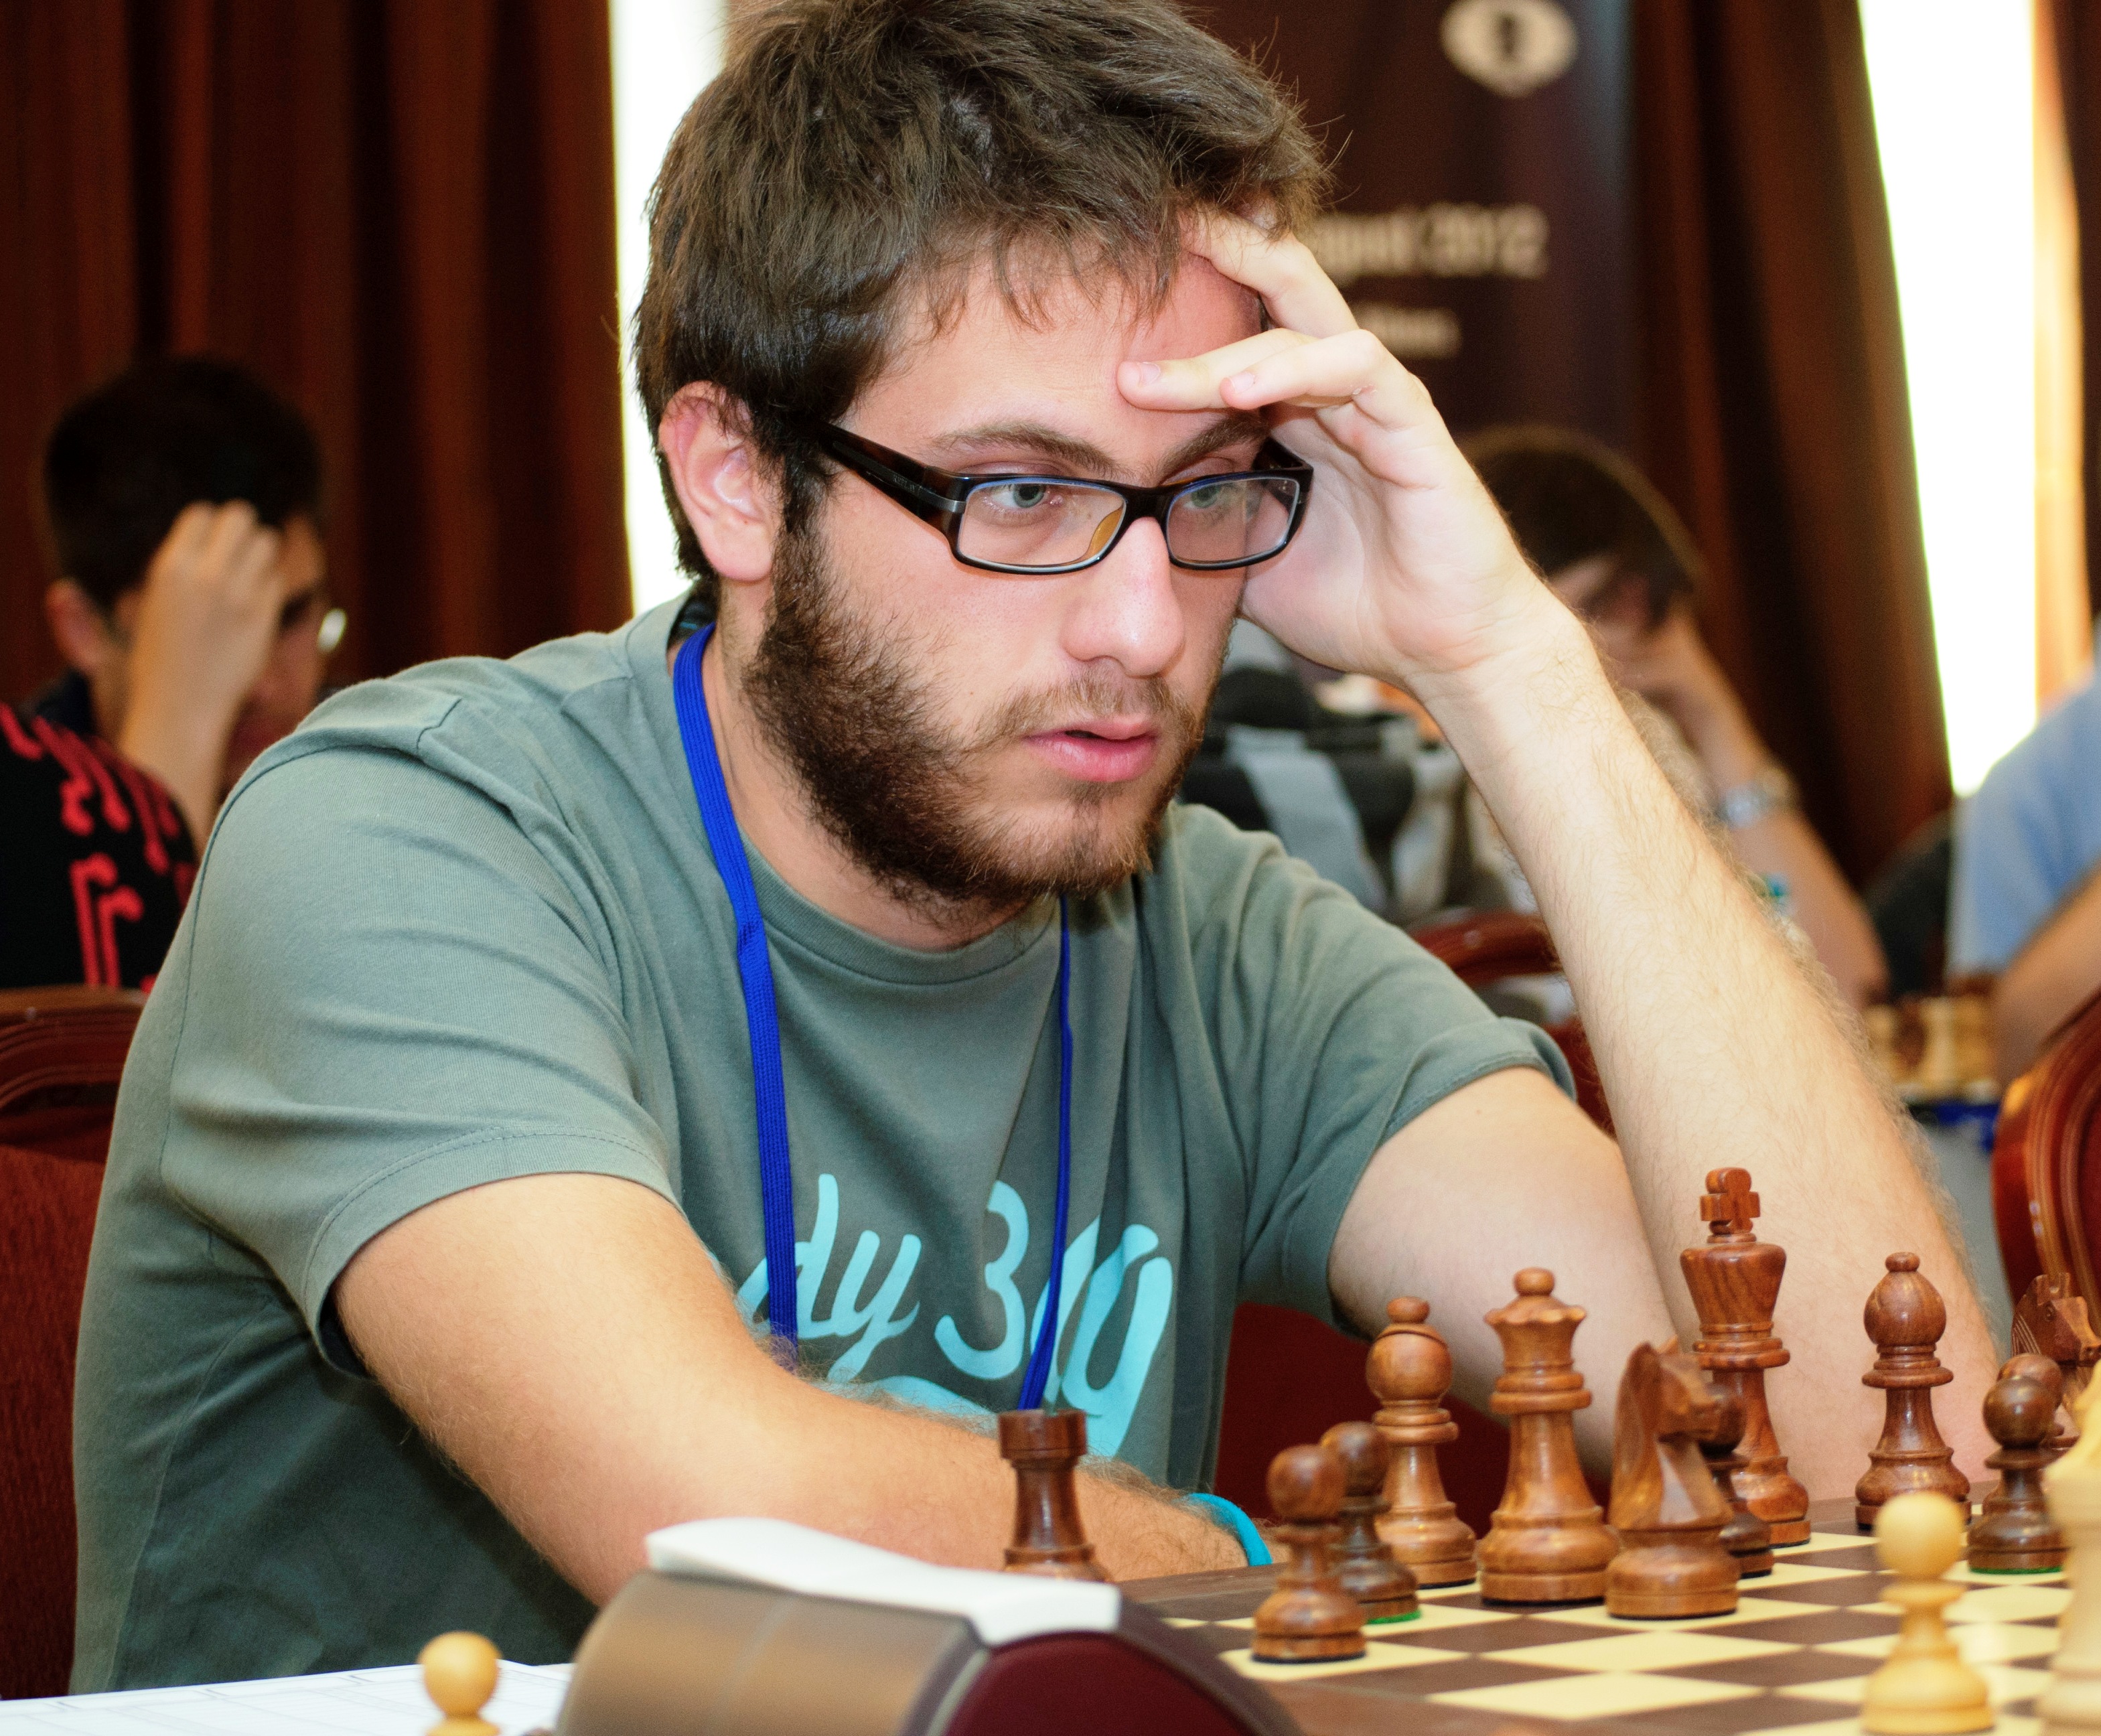 Pavlidis, Antonios (2566) -- Horvath, Dominik (2540), German Chess